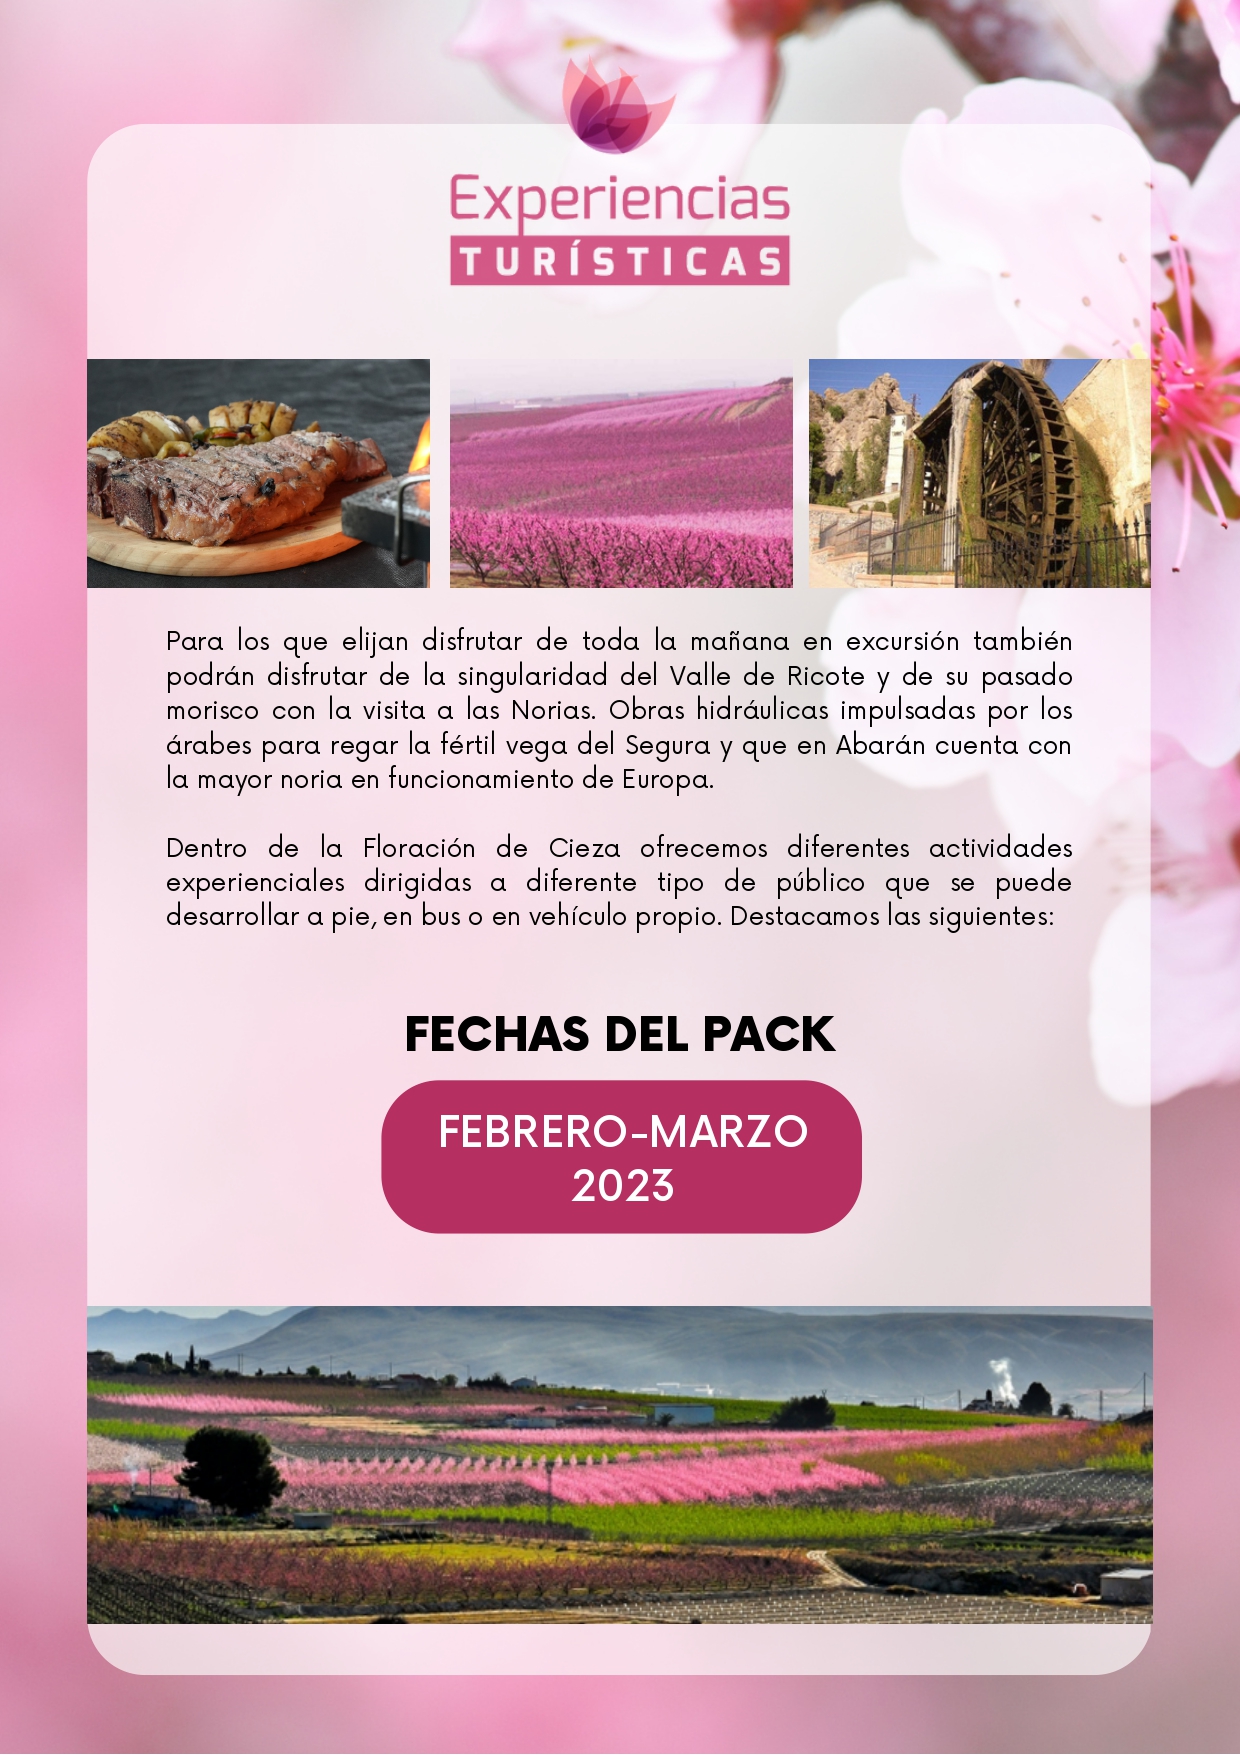 PAQUETES TURSTICOS-Floracion-de-Cieza Febrero  Marzo 2022_page-0002.jpg